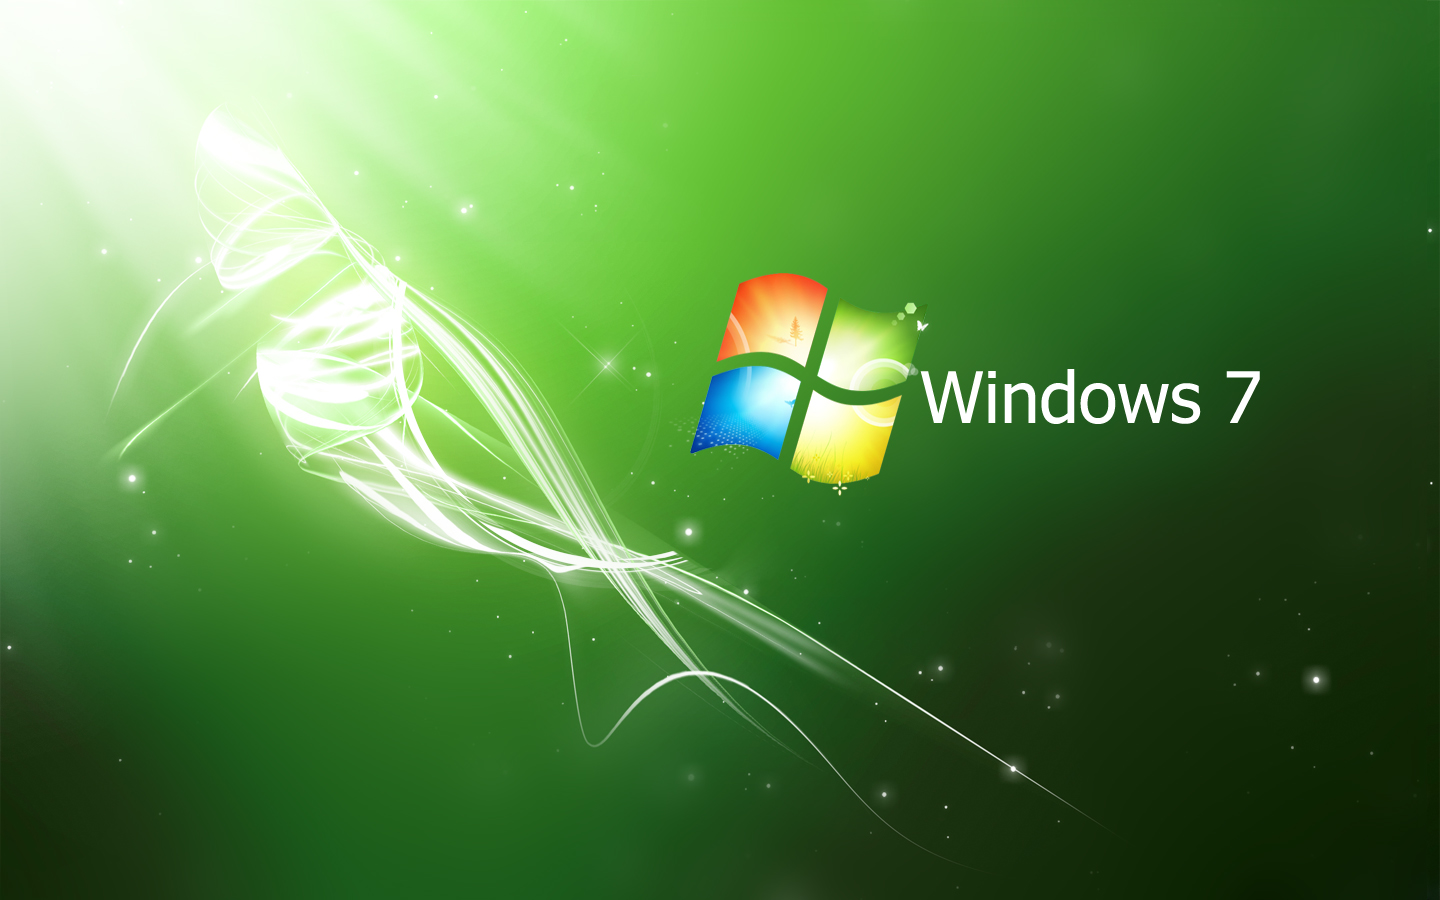 Hãy khám phá bộ sưu tập hình nền phong phú của Windows 7 trên desktop để trang trí máy tính của bạn. Mỗi hình nền đều mang đến những khung cảnh thiên nhiên tuyệt đẹp, những hình ảnh kỹ thuật số sắc nét, rực rỡ, giúp màn hình desktop của bạn trở nên sống động và đẹp lung linh.